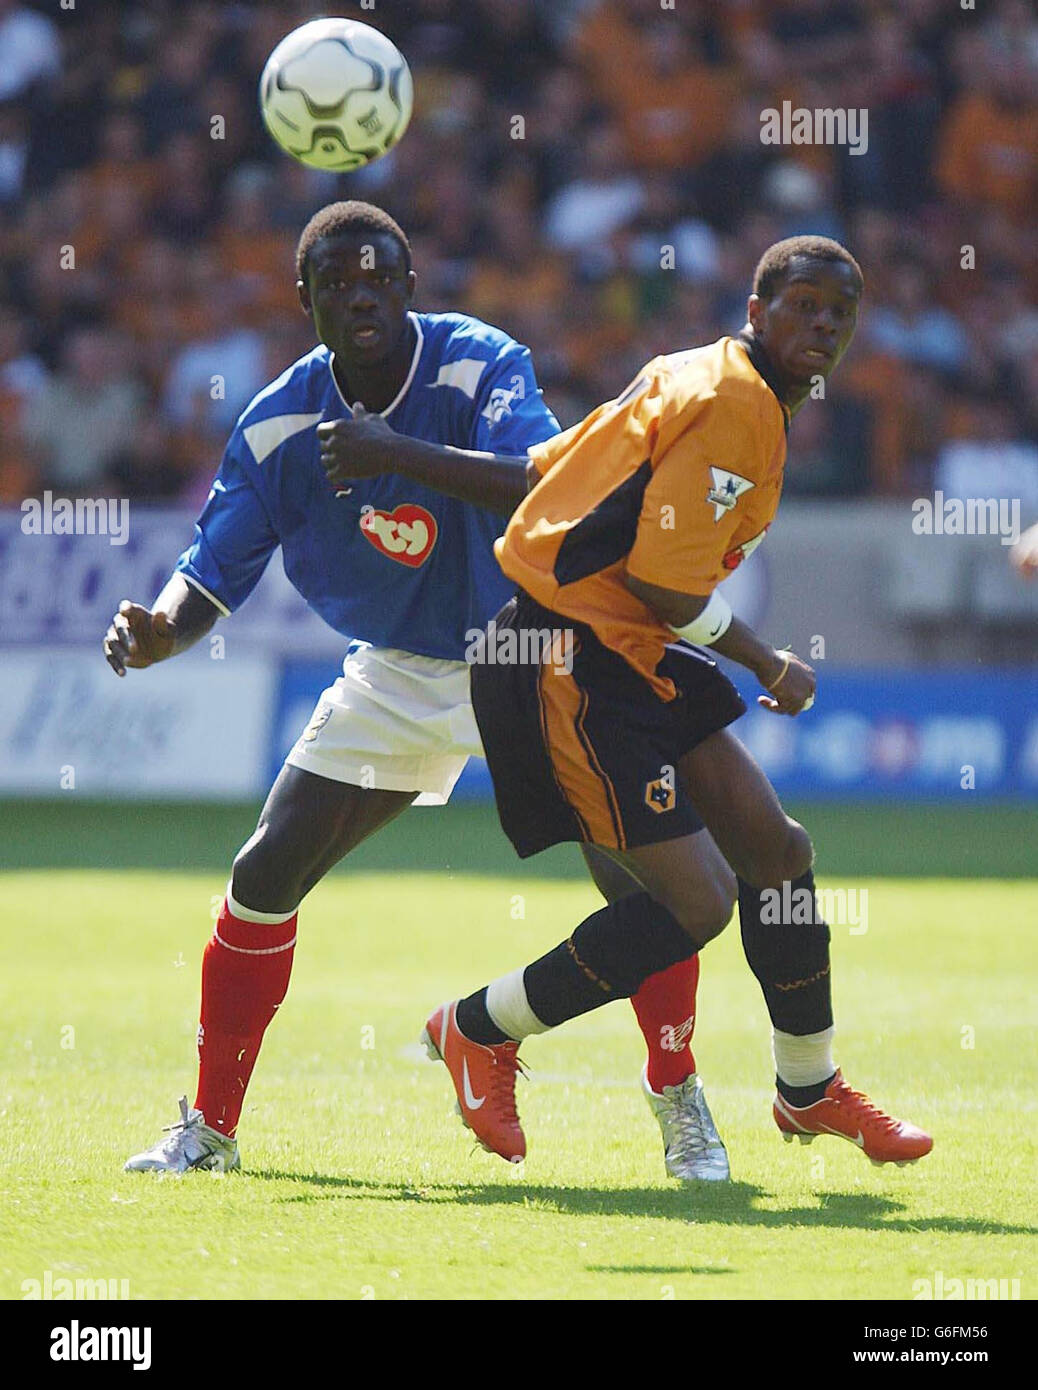 Le défenseur de Portsmouth Amdy Faye combat avec Wolverhampton Wanderers Henri Camara (R), lors de leur match de Premiership FA au sol de Molineux de Wolves. Banque D'Images